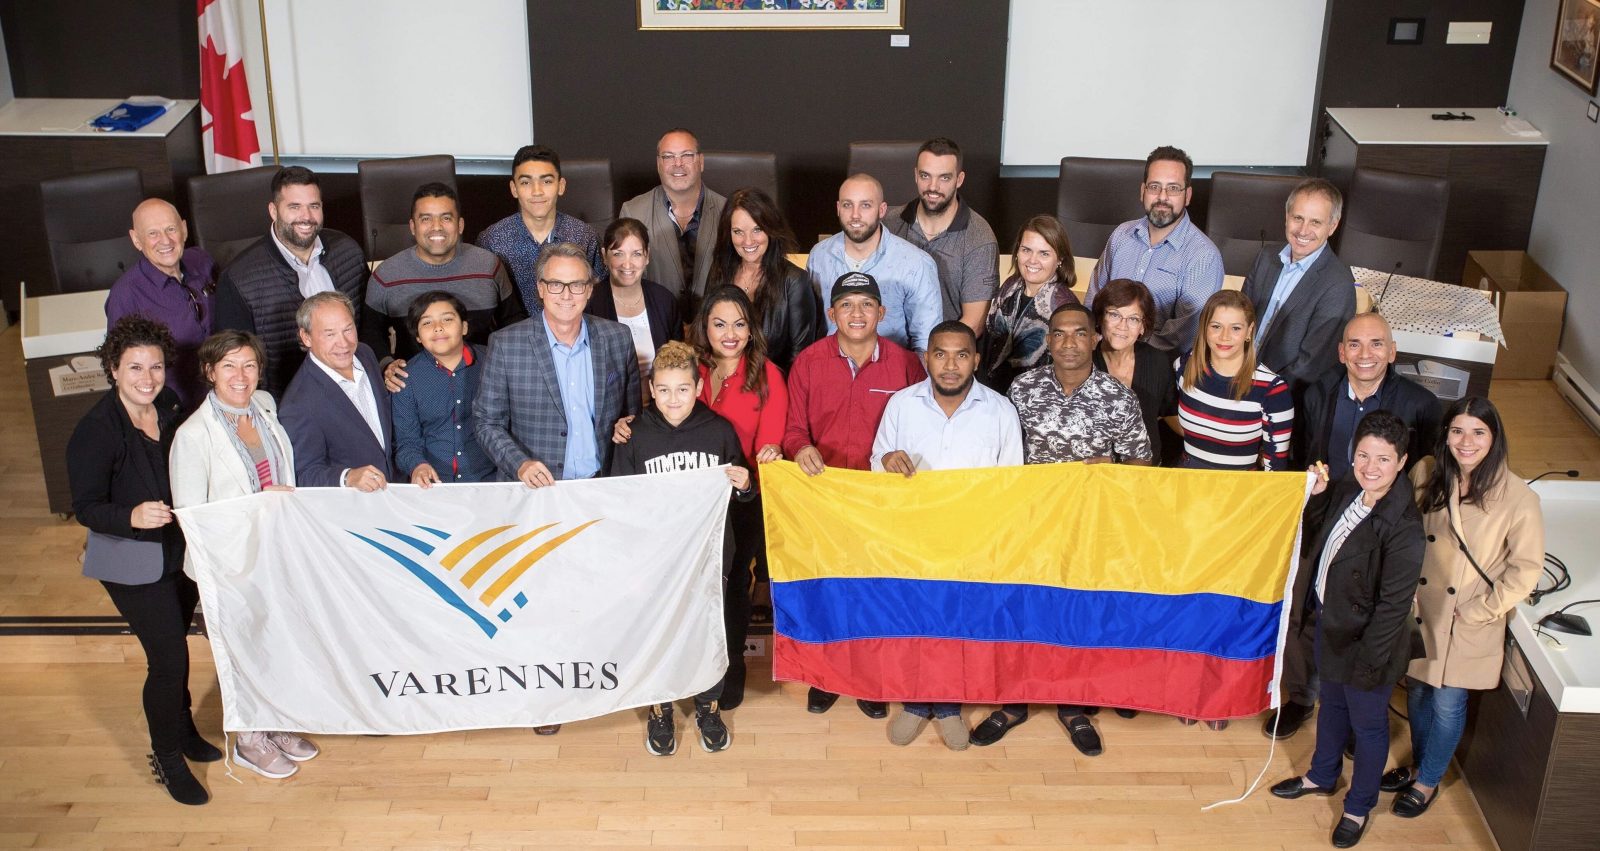 Bienvenidos! Accueil de travailleurs colombiens à Varennes